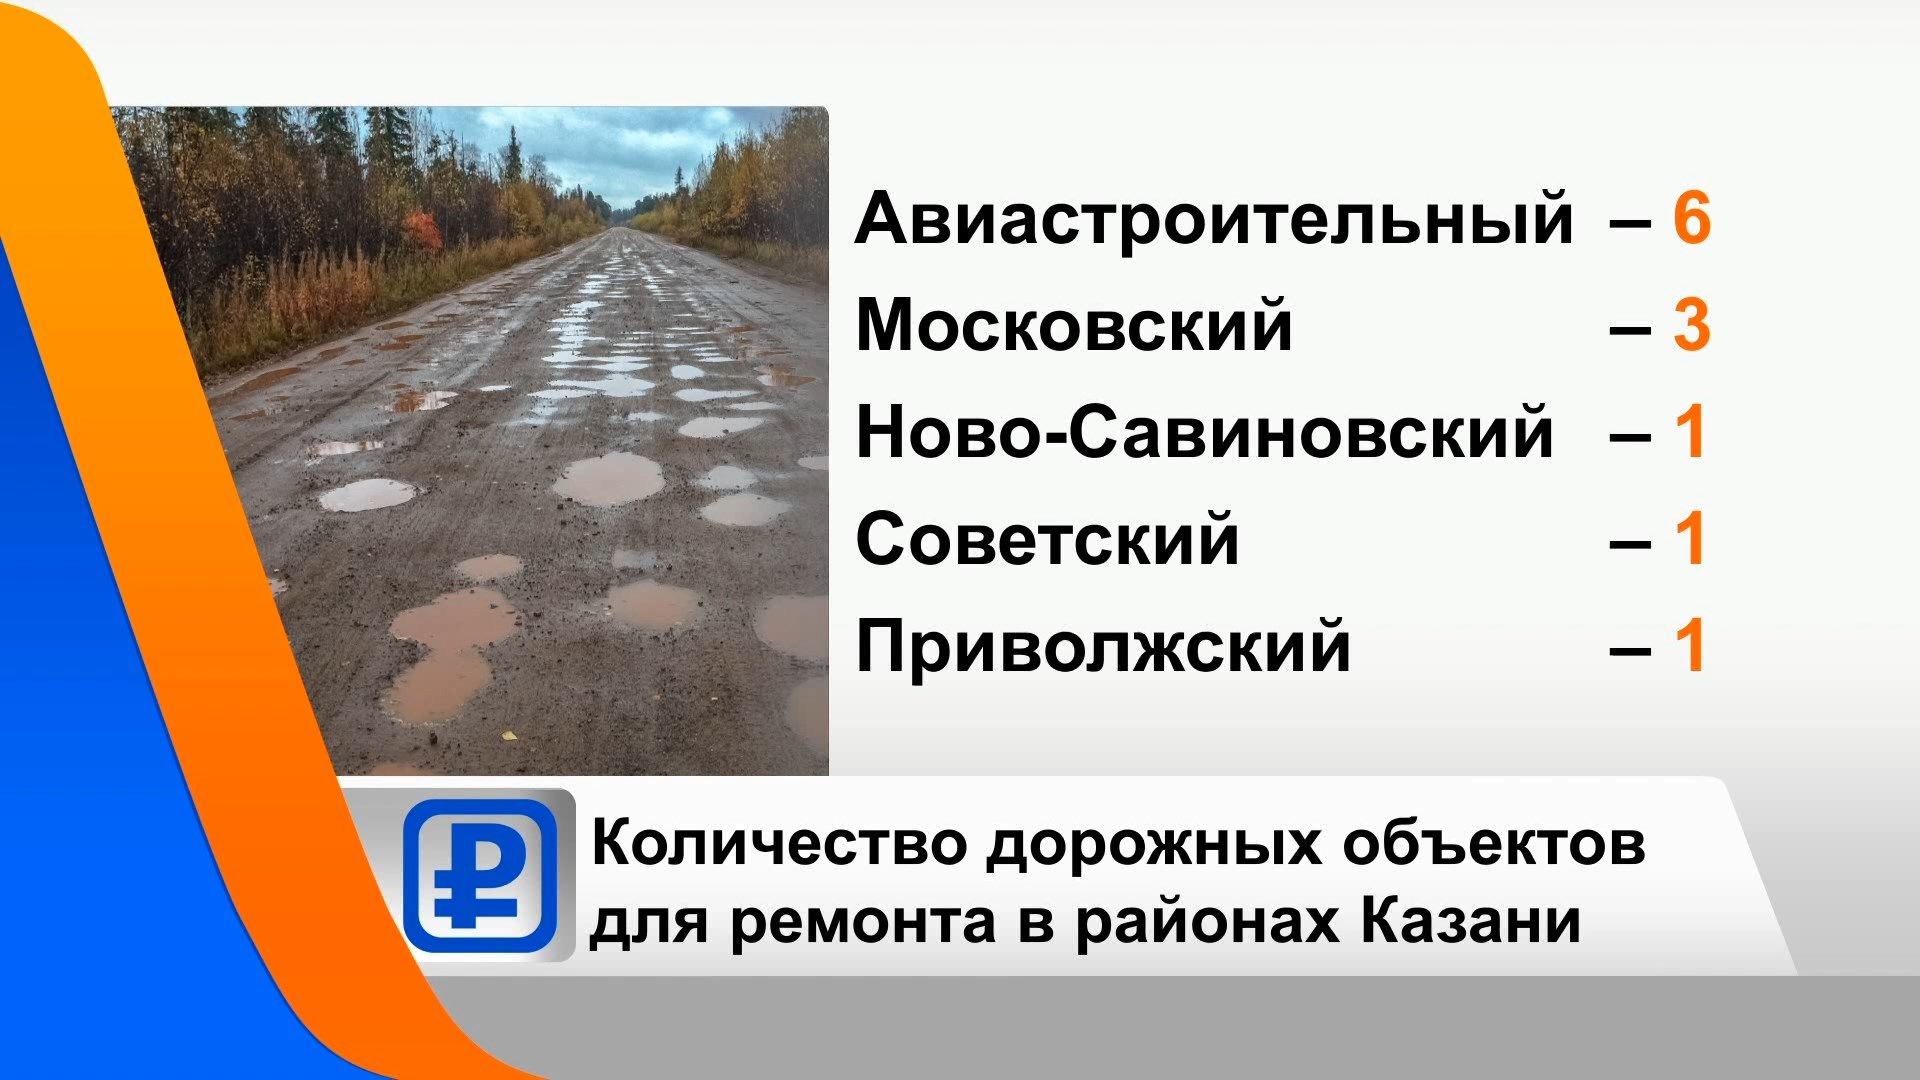 В Татарстане в рамках нацпроекта отремонтируют 133 дорожных объекта